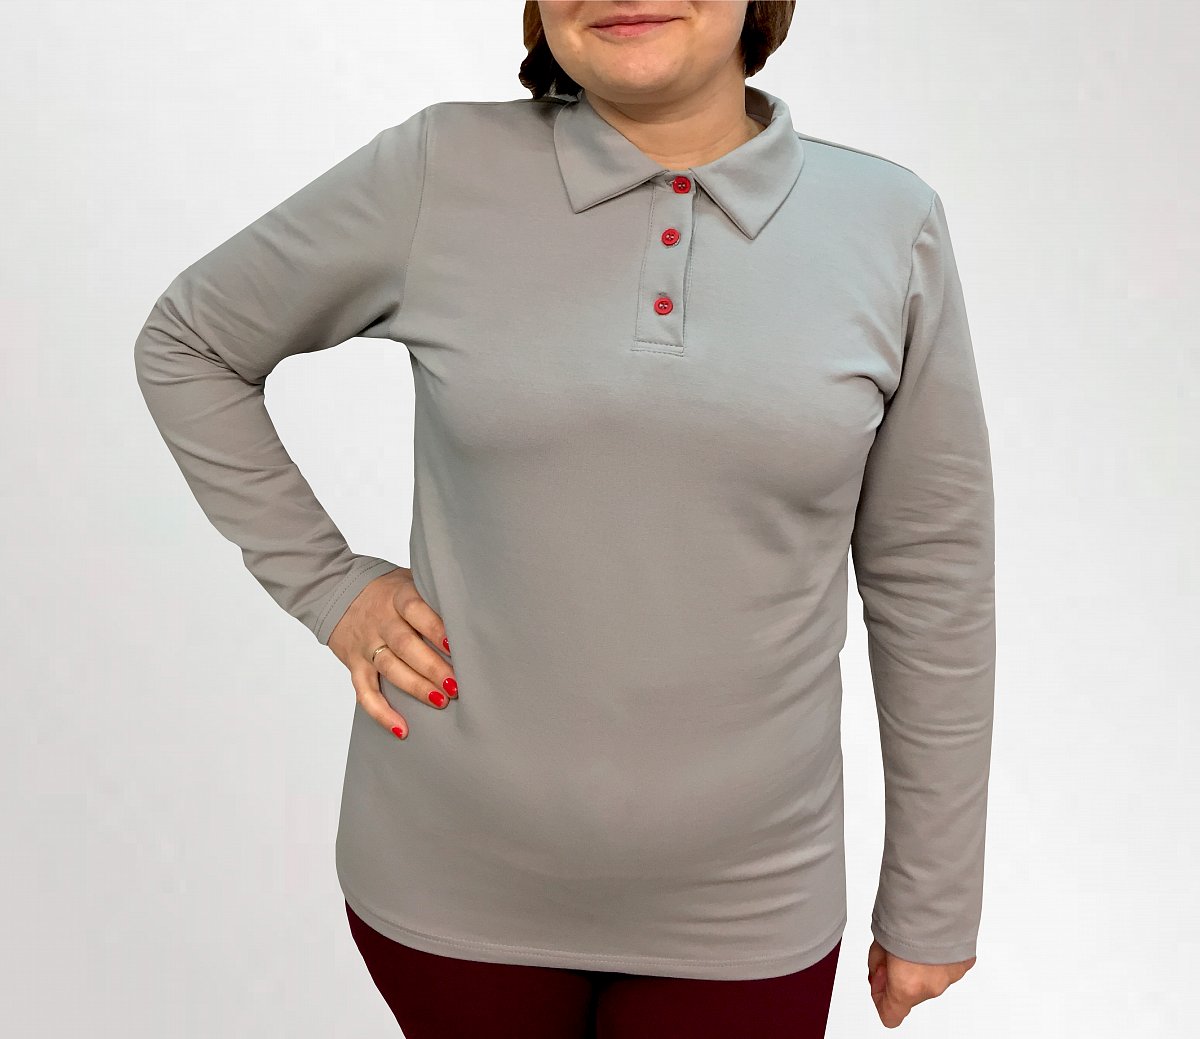 Пошив рубашек поло - пример модели рубашки поло с длинным рукавом